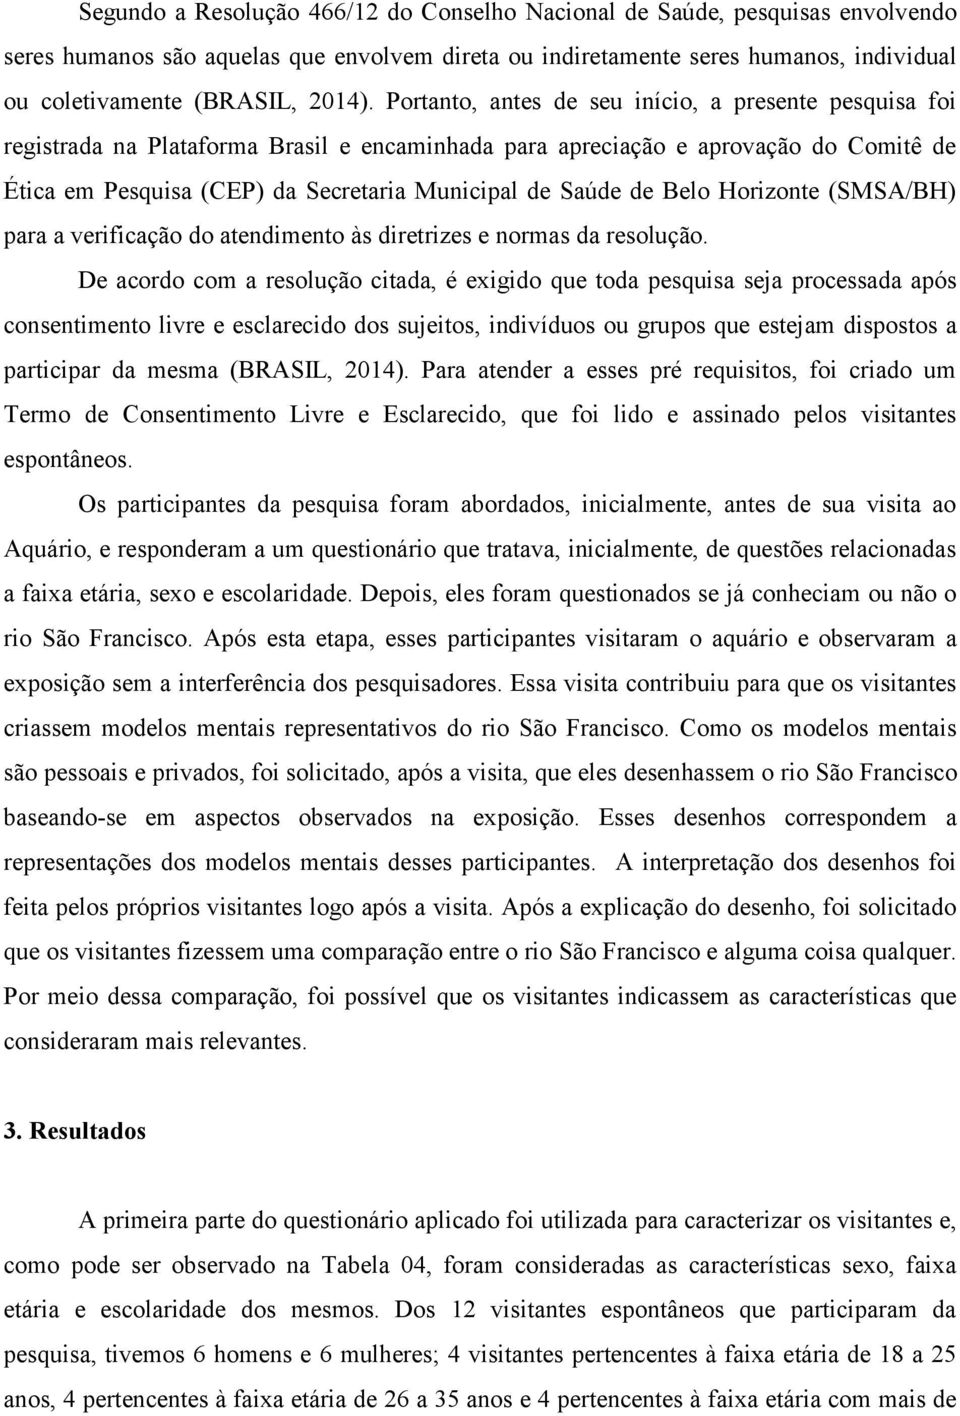 de Belo Horizonte (SMSA/BH) para a verificação do atendimento às diretrizes e normas da resolução.